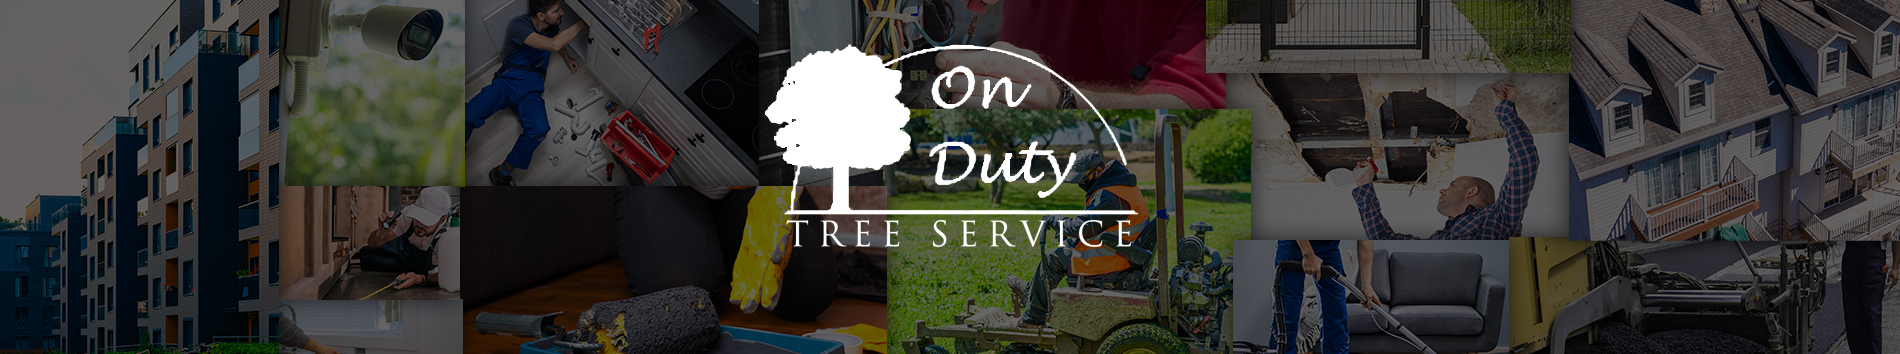 On Duty Tree Service